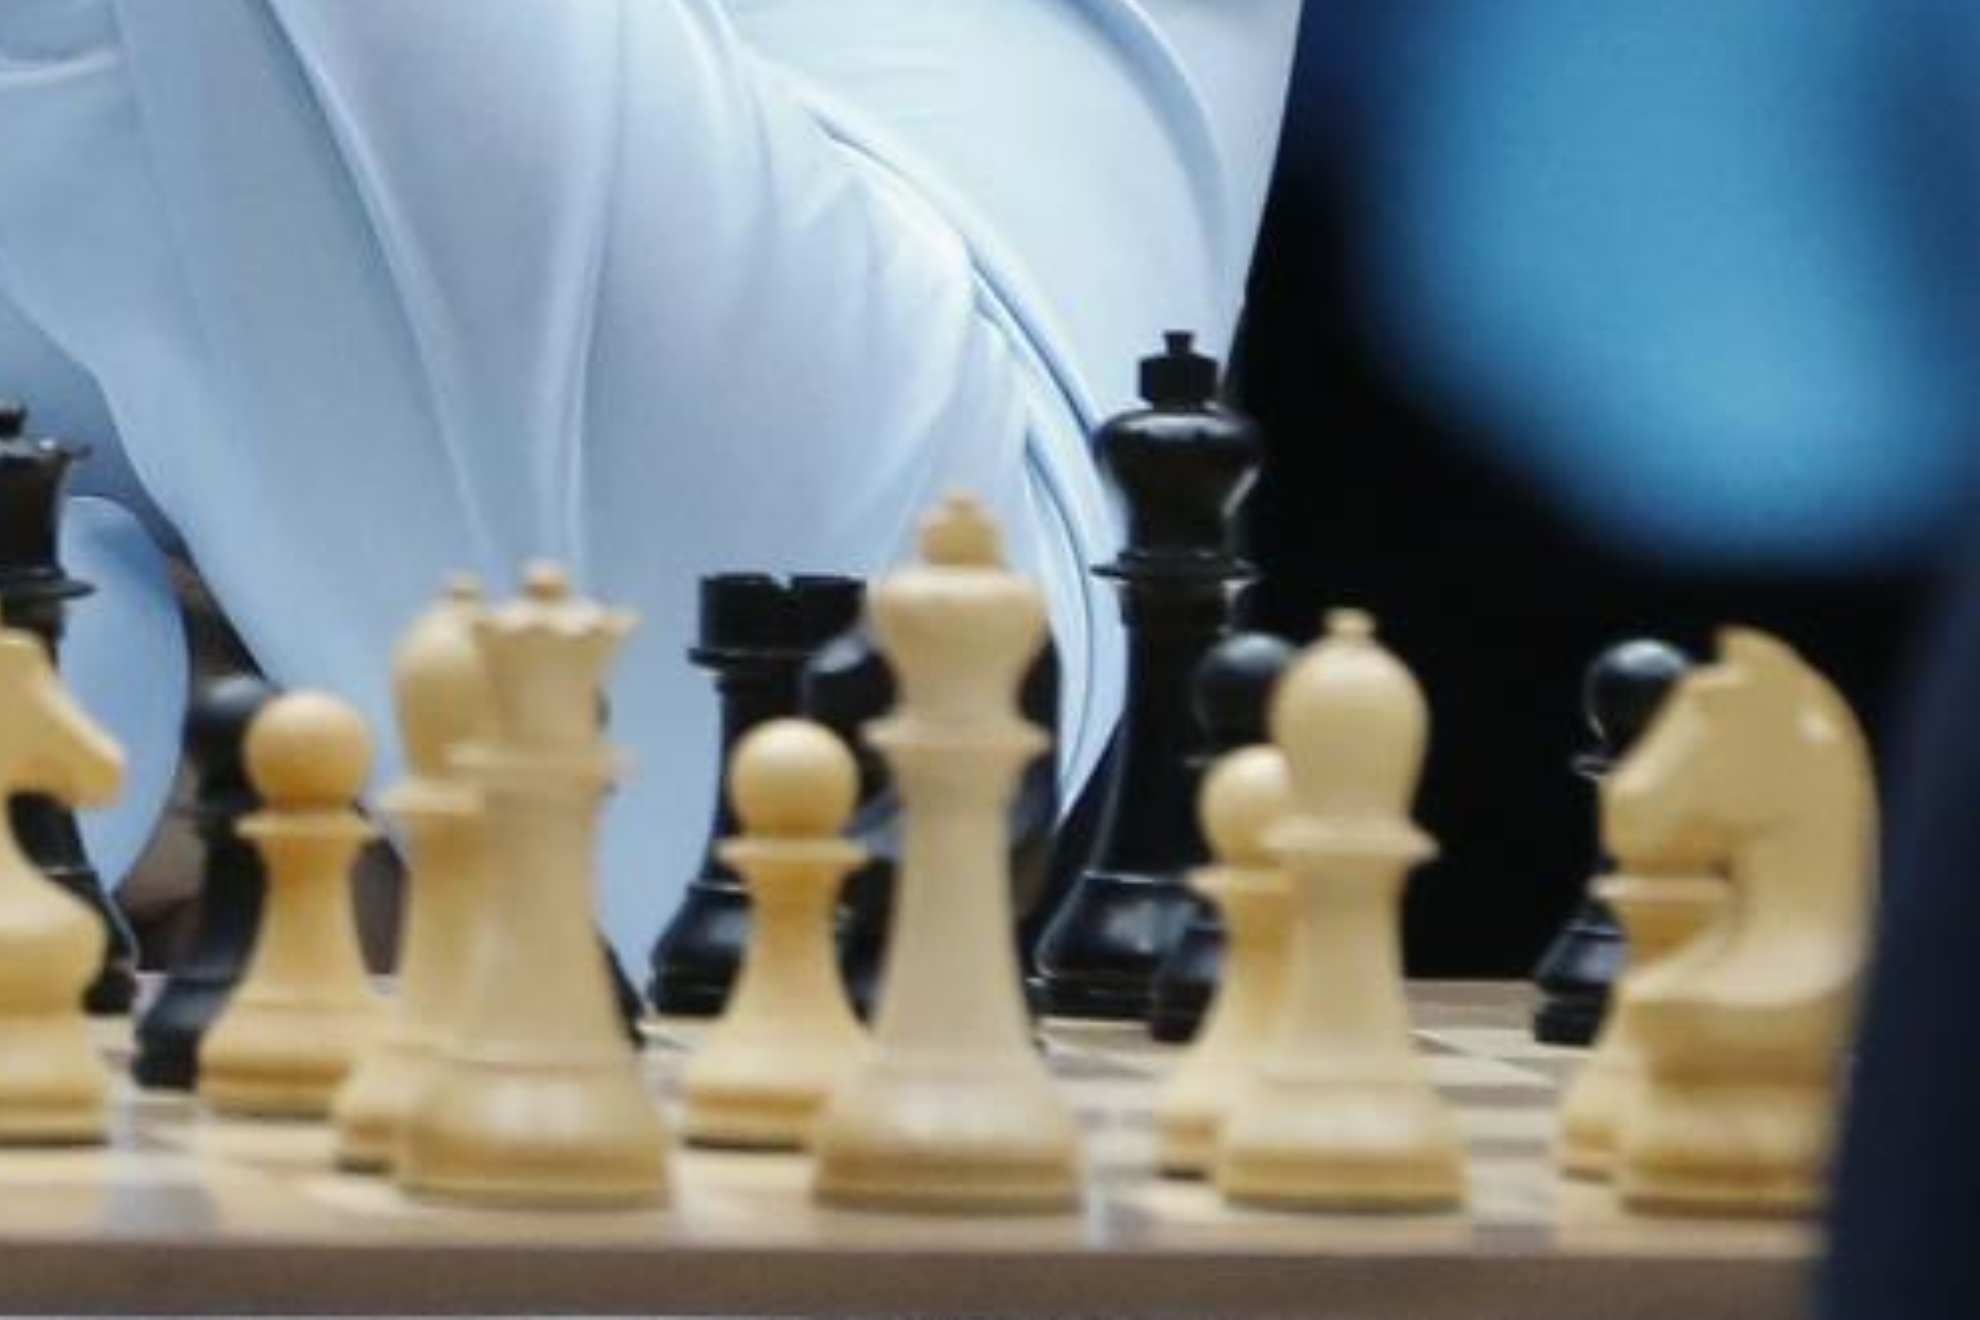 Las críticas a la prohibición de que las jugadoras transgénero de ajedrez  participen en torneos femeninos - BBC News Mundo